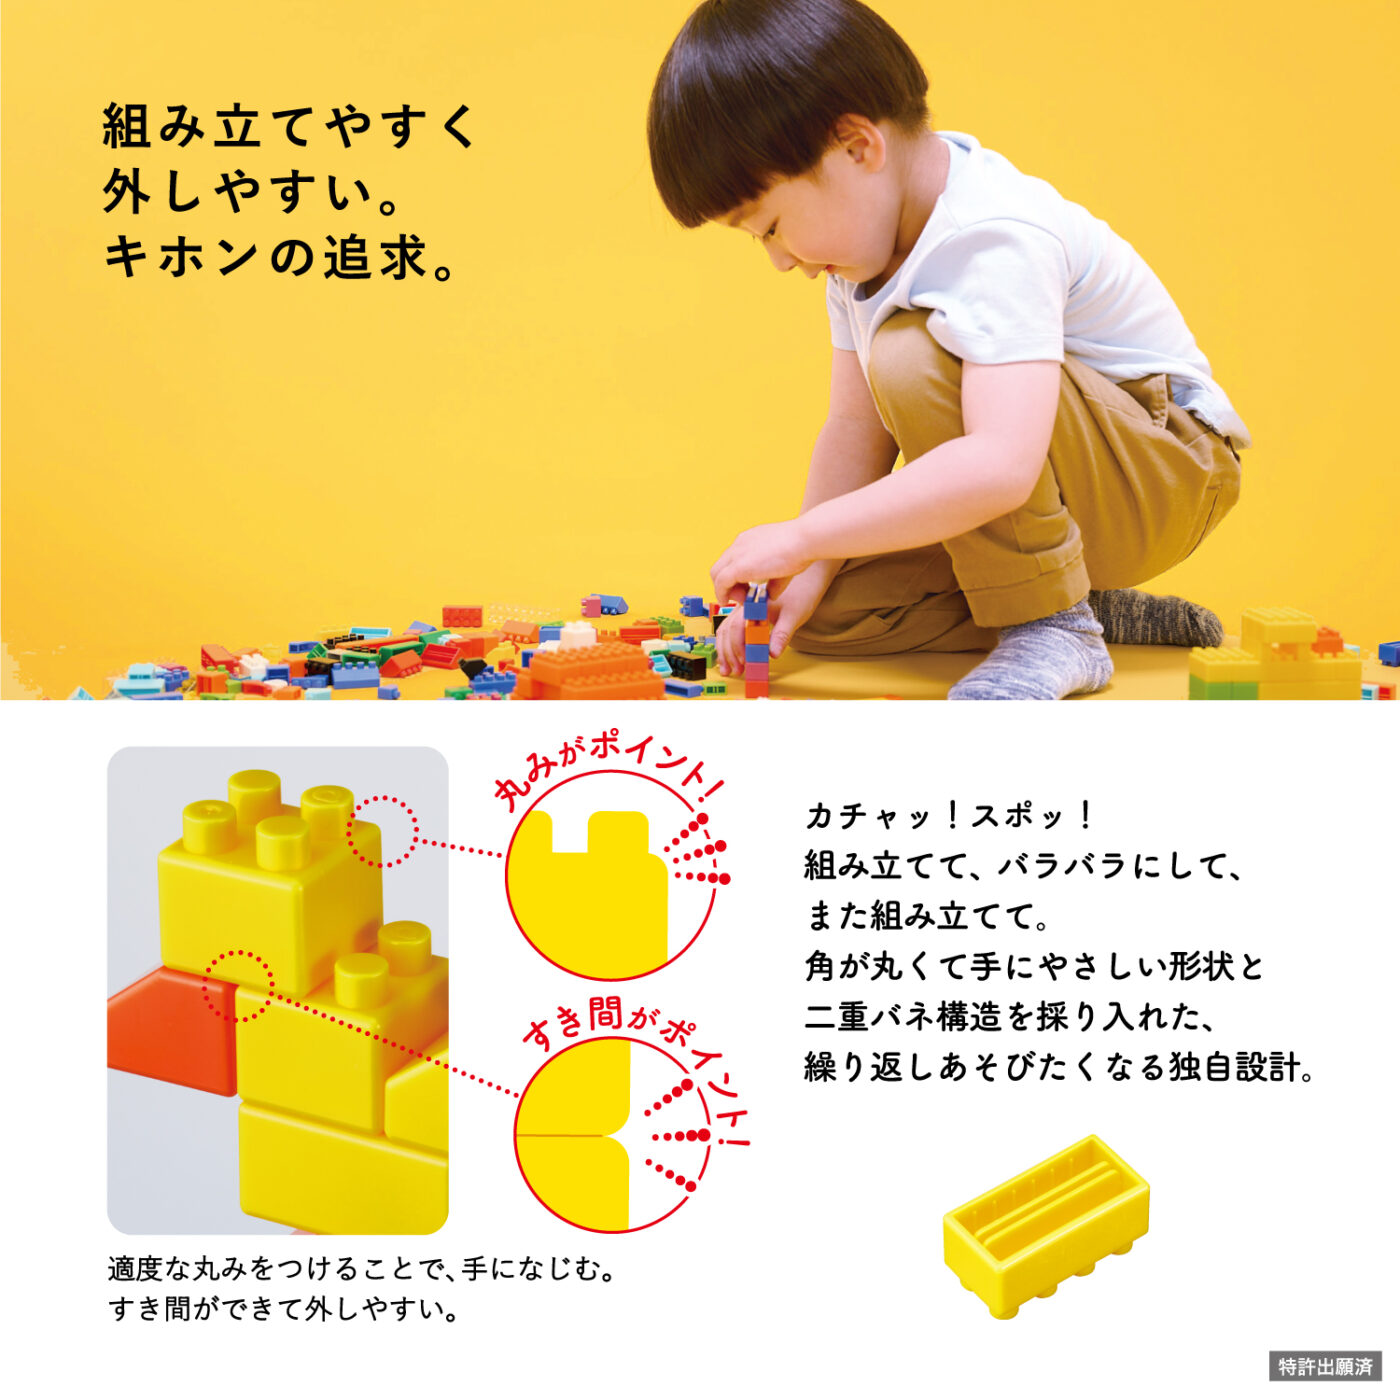 ダイヤブロック KIHONIRO(キホンイロ) Lの商品画像6